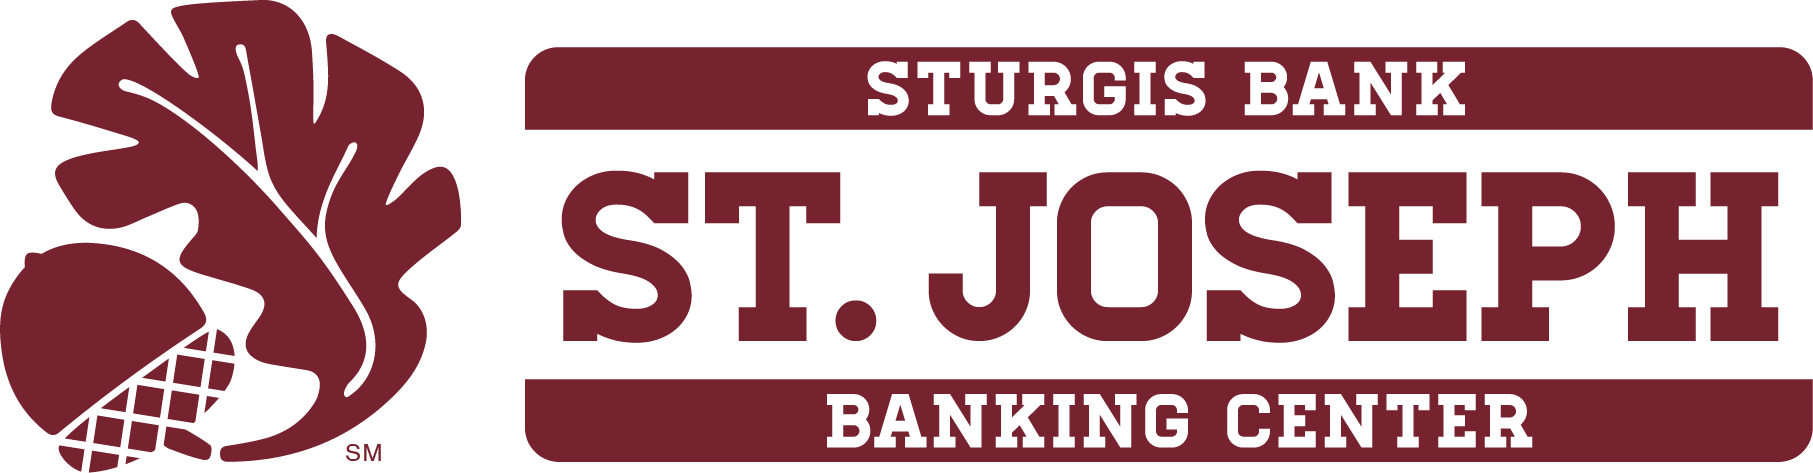 Link to Sturgis Bank's website.